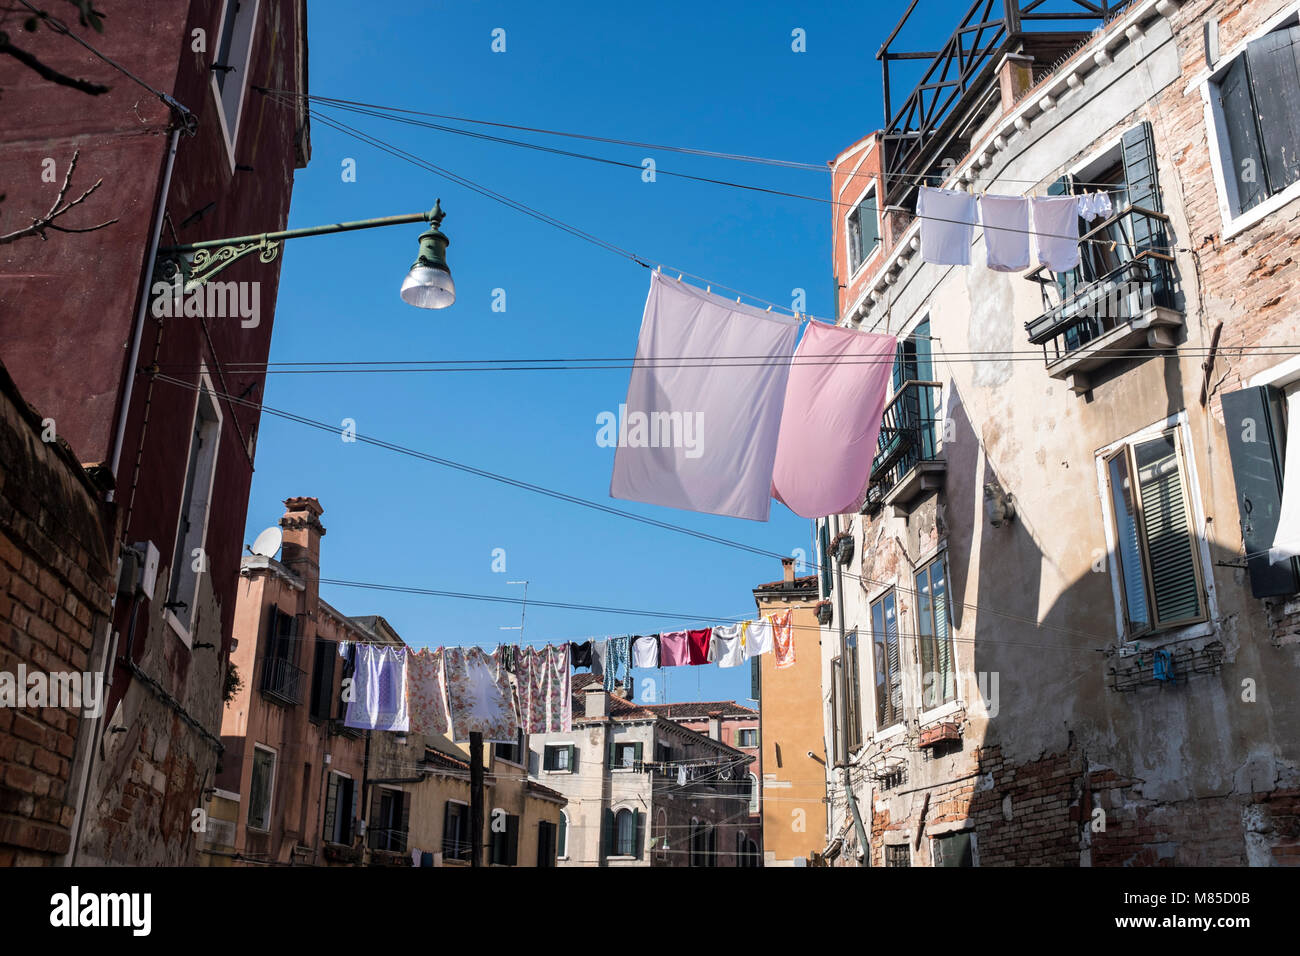 Kleidung hingen in Venedig, Italien, 12. März 2018 zu trocknen Stockfoto